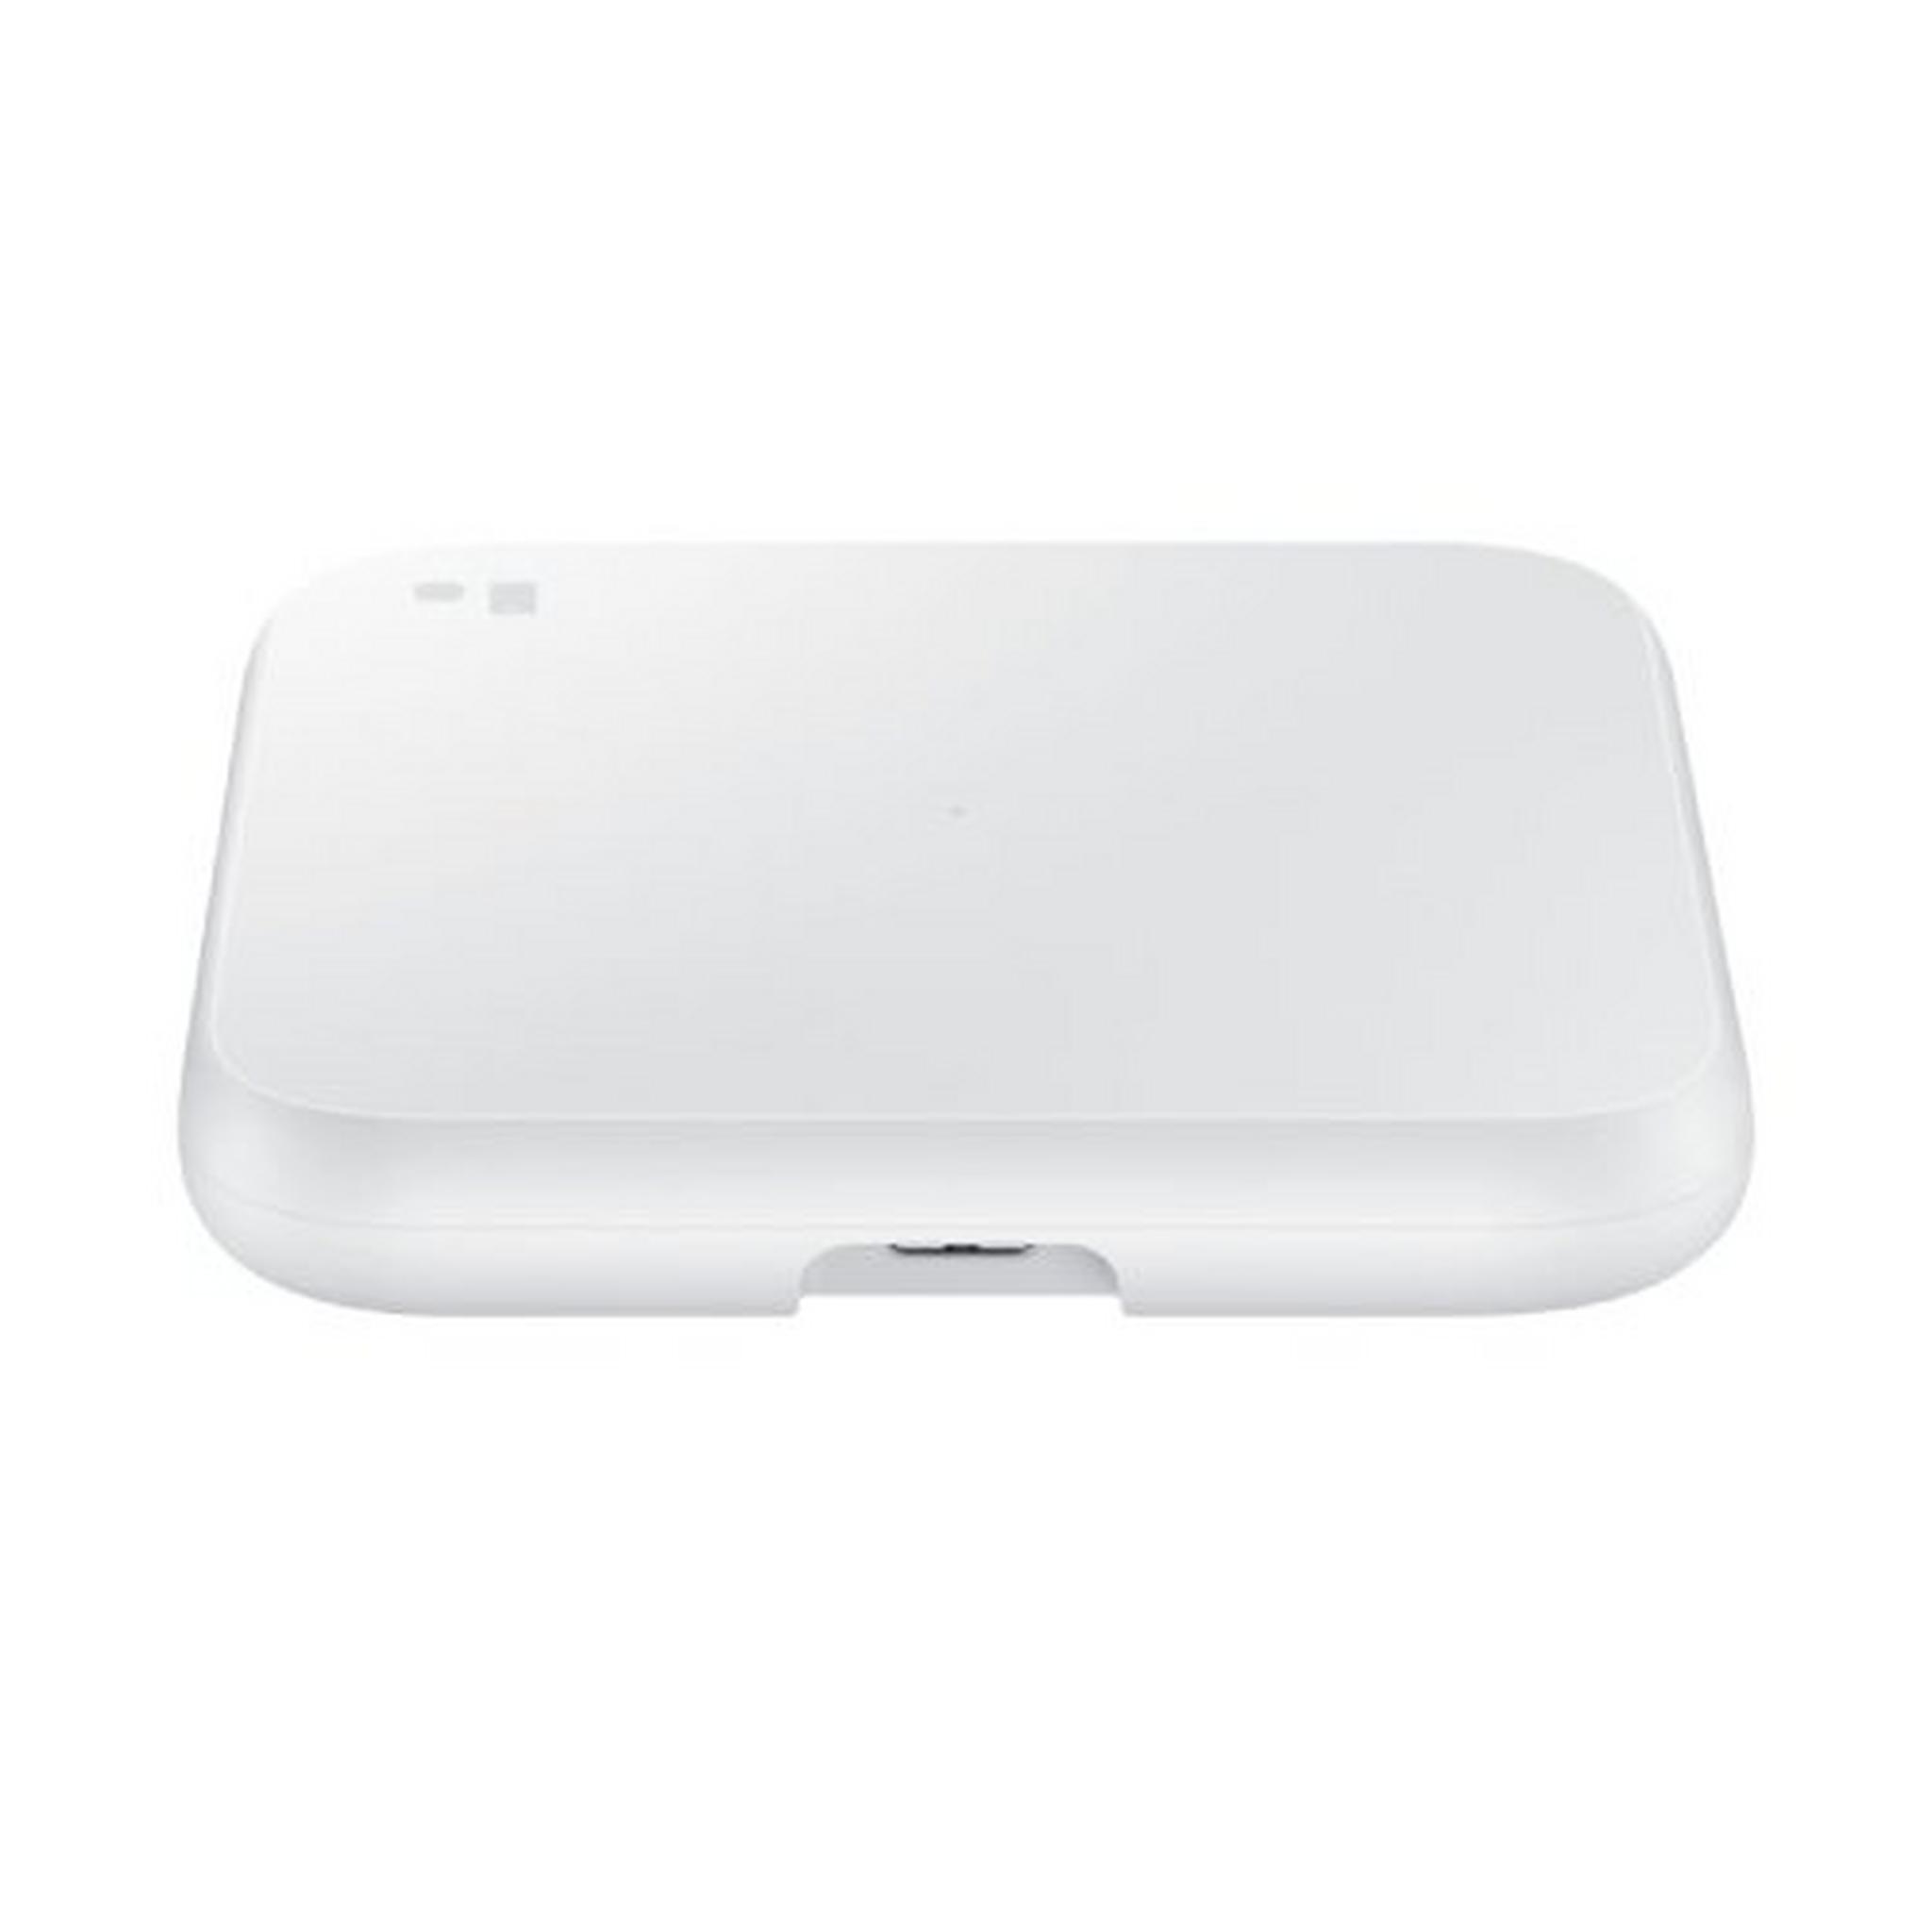 Samsung Wireless Charging Pad - Travel Adaptor 2021 - White